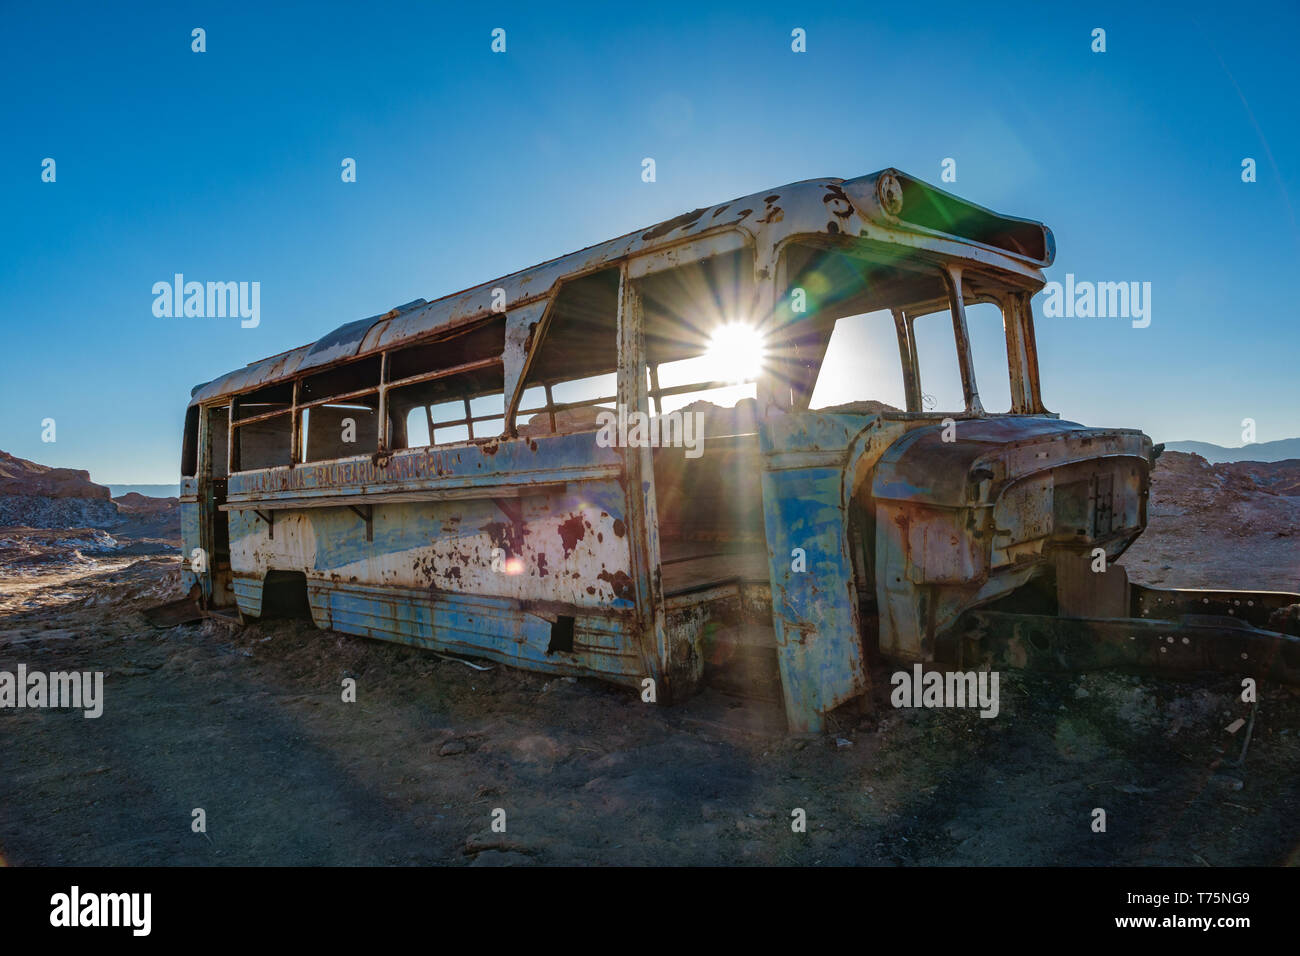 Le bus abandonné à contre-jour dans le désert d'Atacama, Chili Banque D'Images